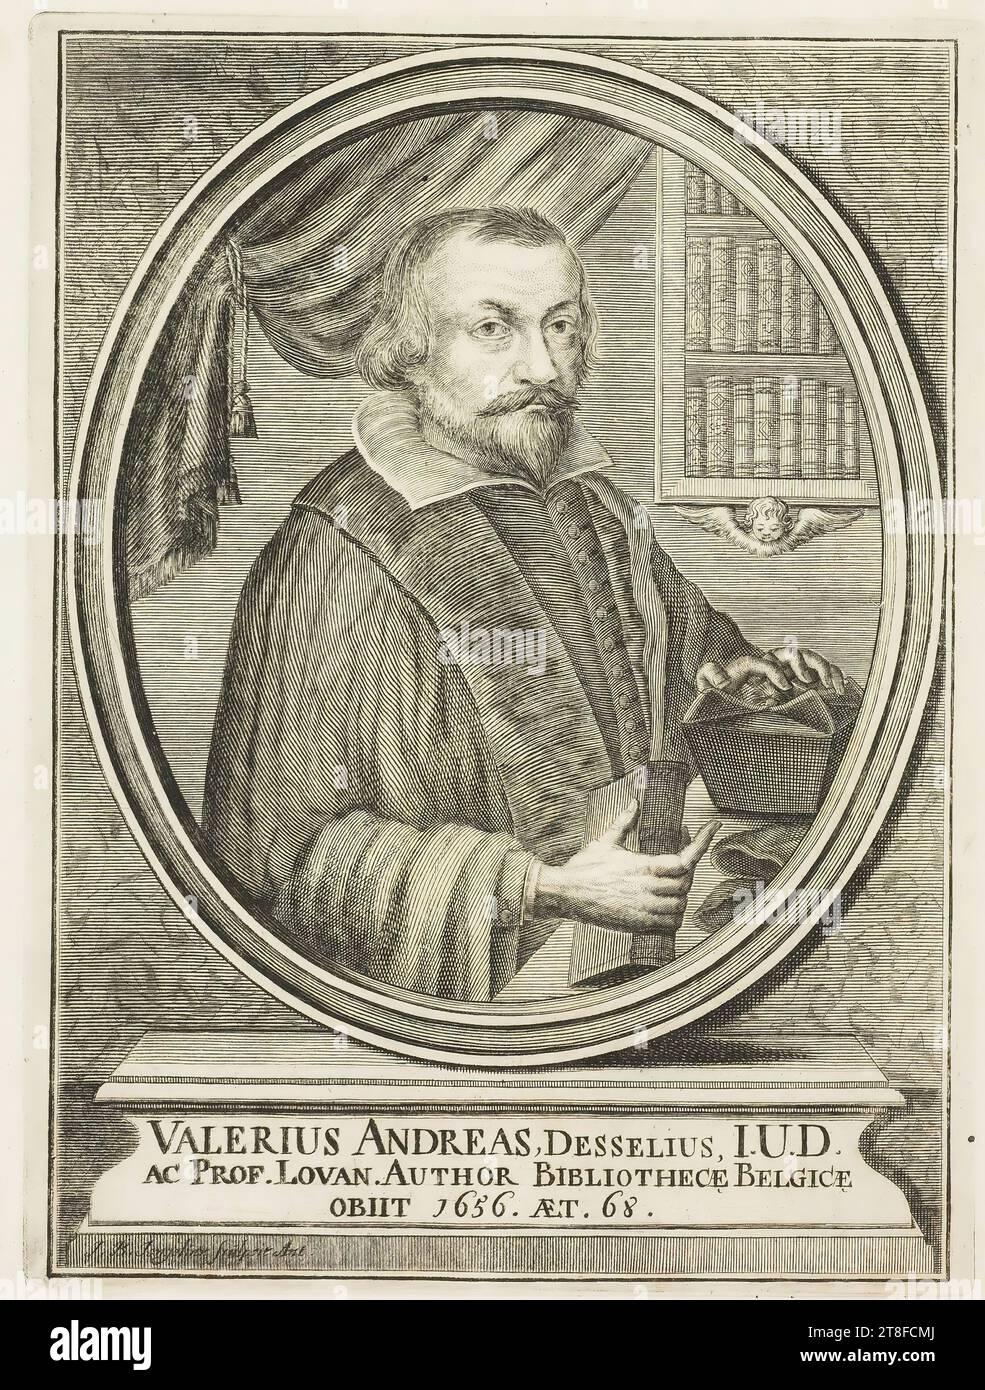 VELERIUS ANDREAS, DESSELIUS, I.U.D., ET PROF. LOVAN. AUTEUR DE LA BIBLIOTHÈQUE BELGE, MORT EN 1656. ET. 68. J. B. Jongelinx Carved Ant Banque D'Images